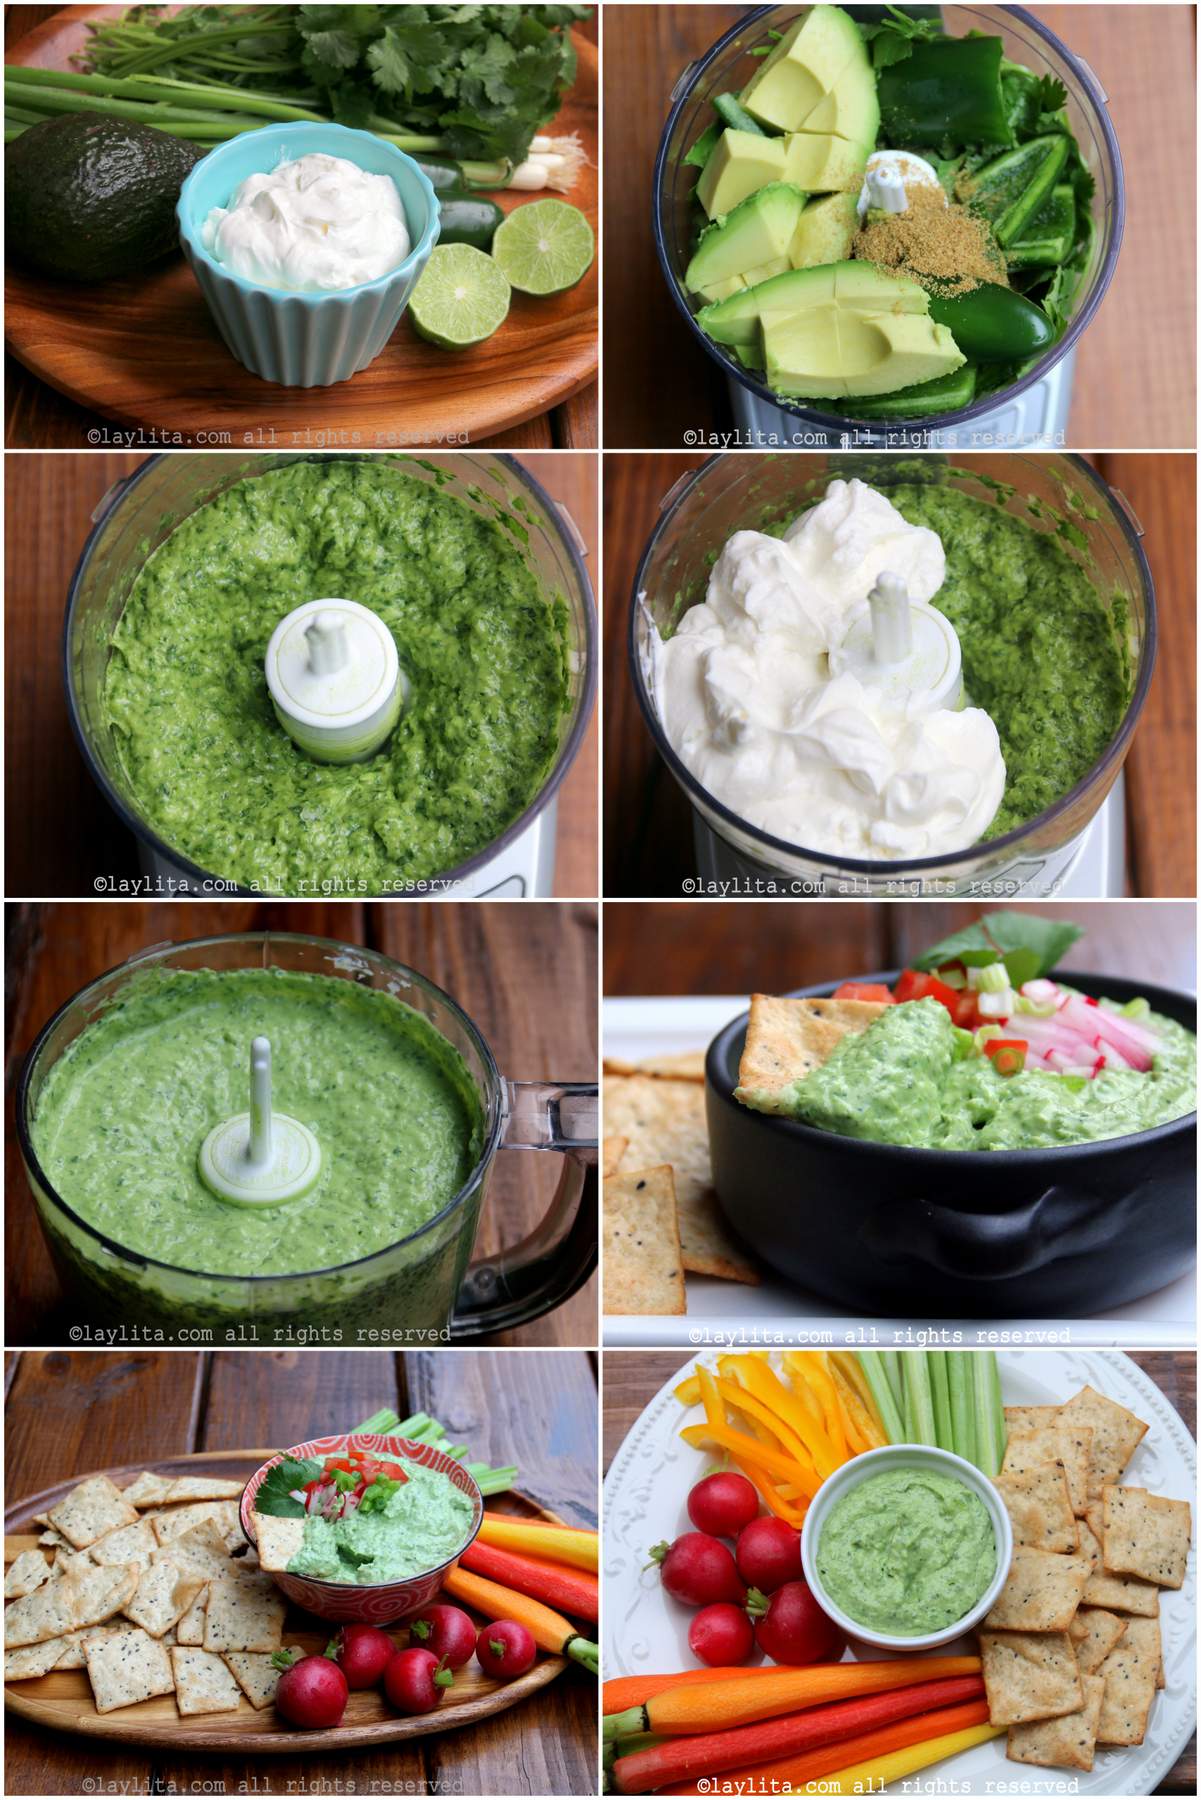 How to make a spicy avocado yogurt dip